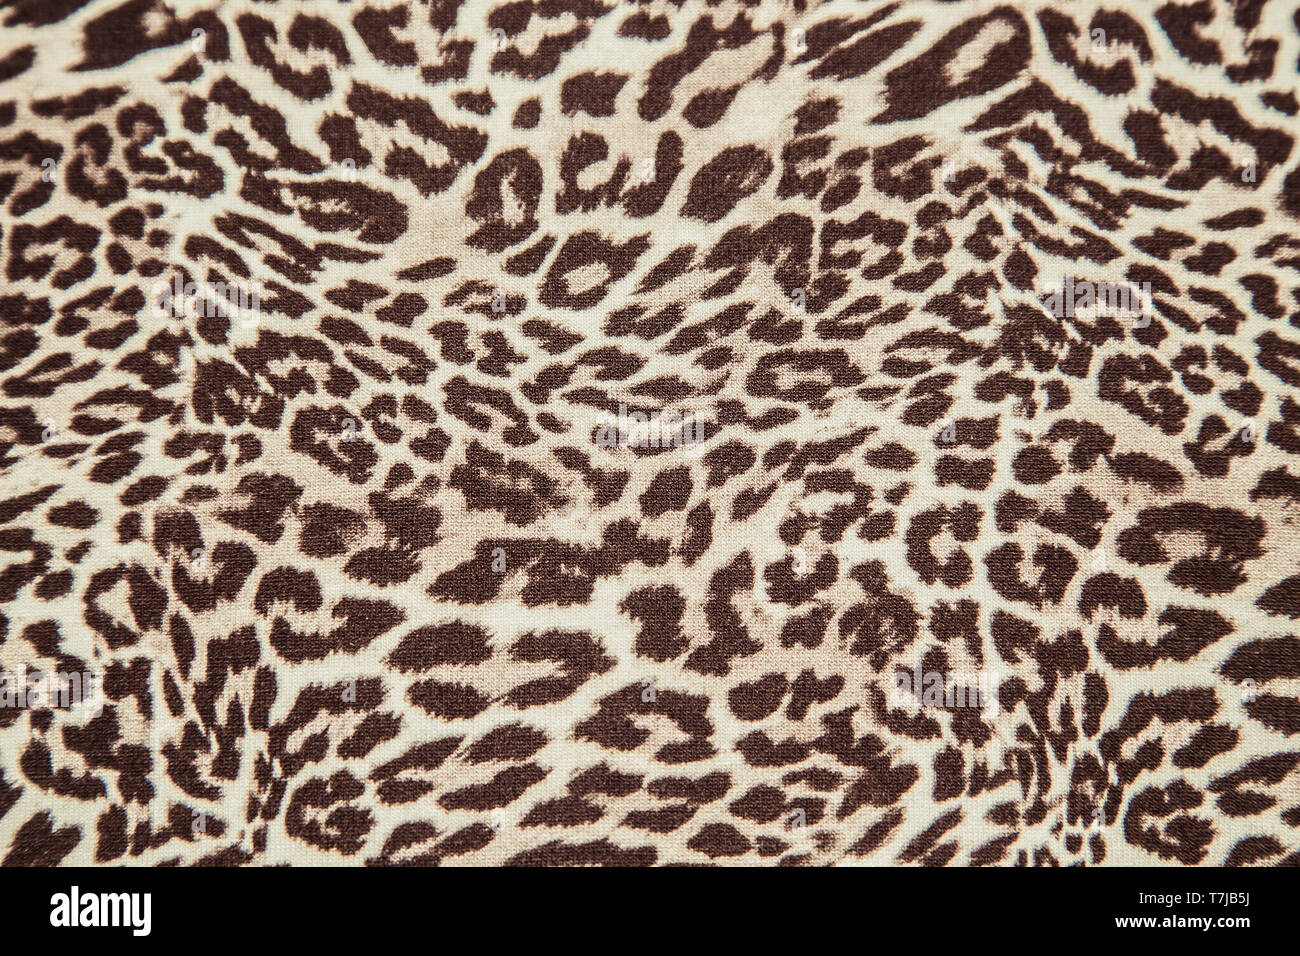 Textura del material animal print leopardo Foto de stock